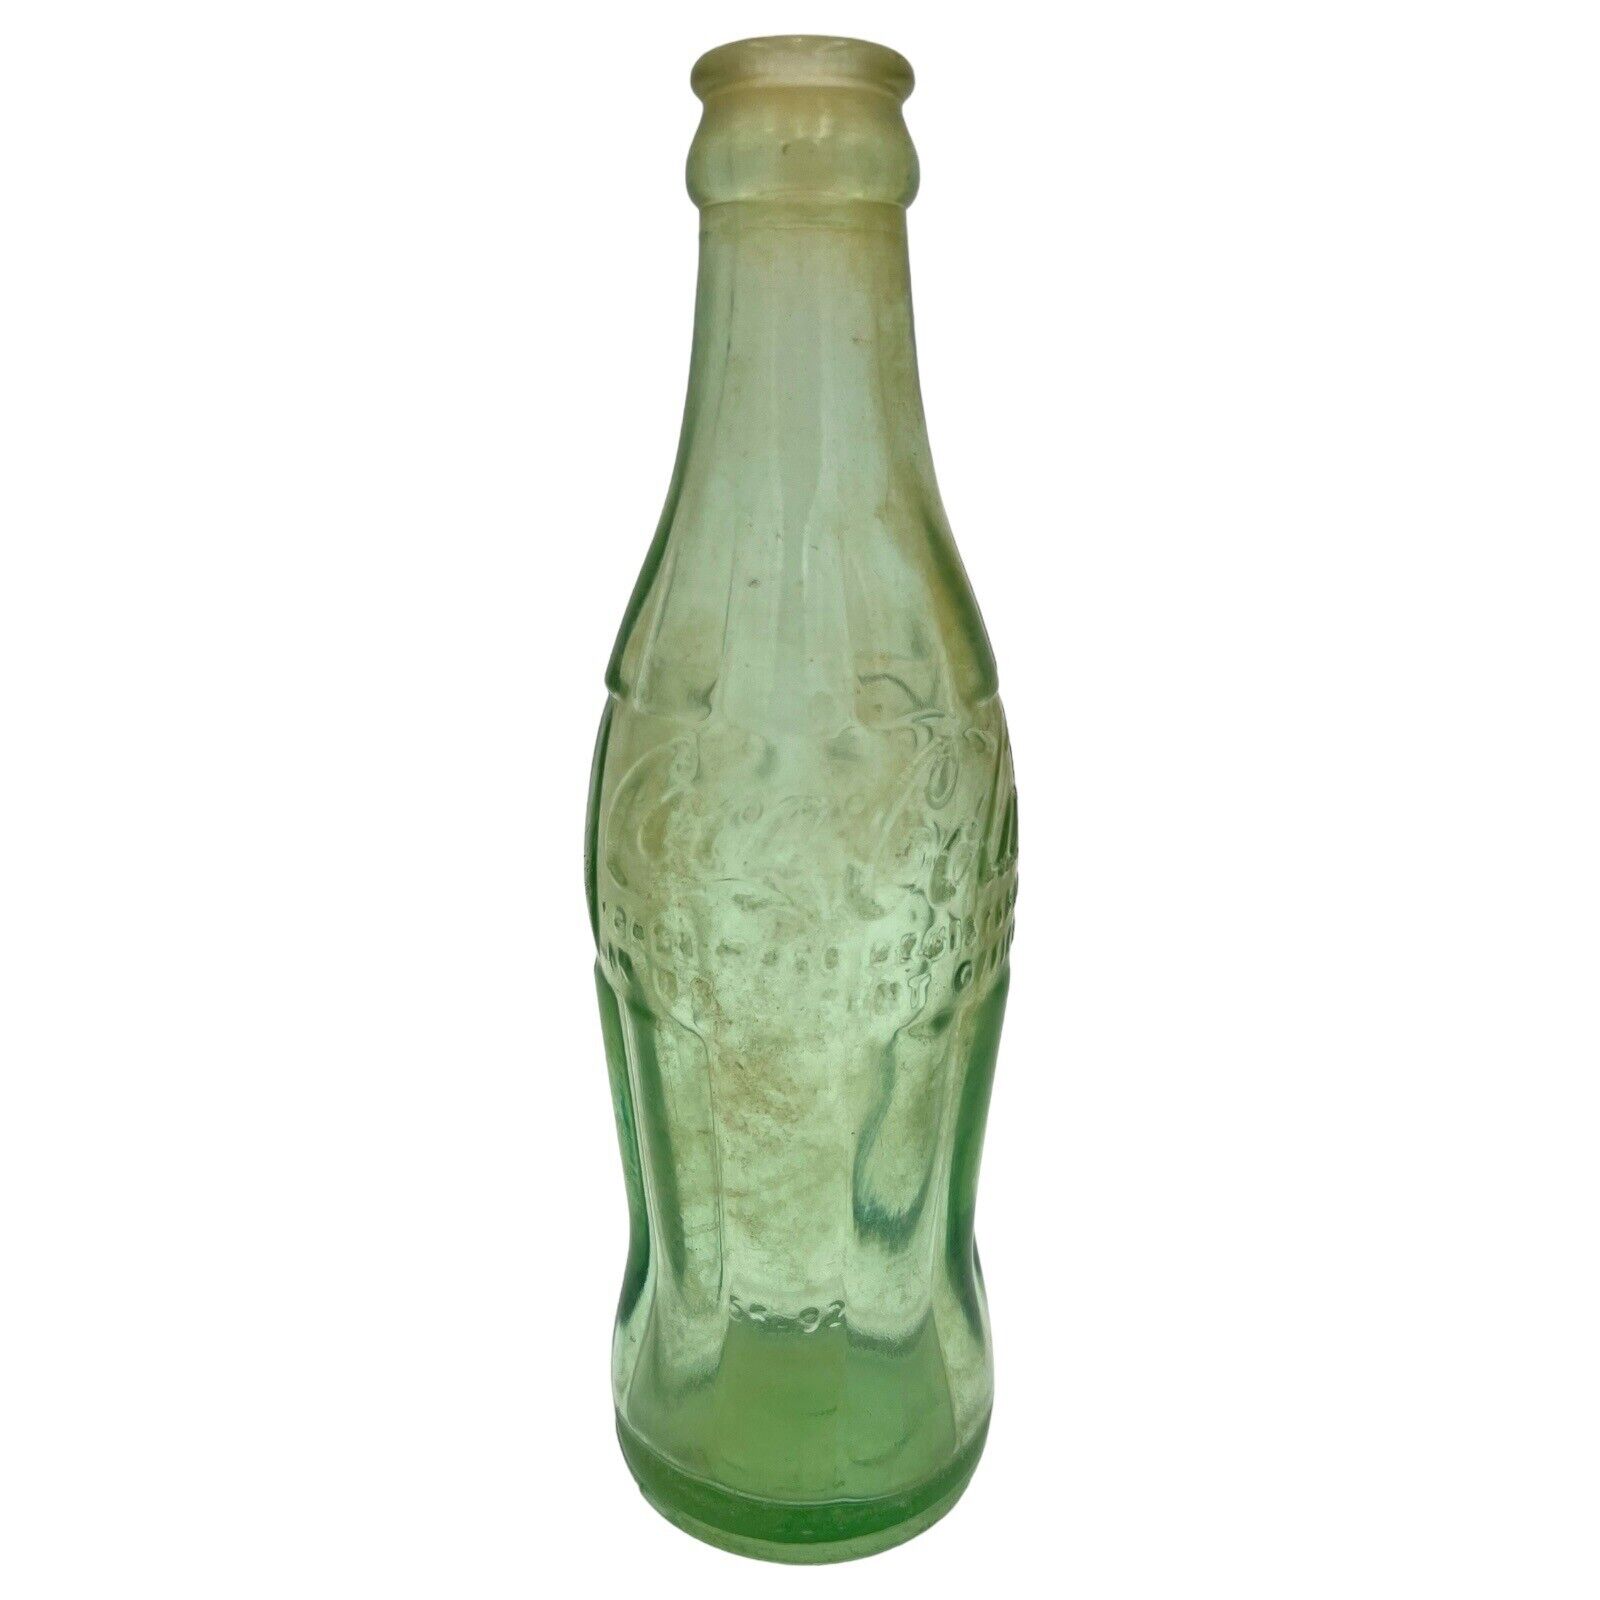 VTG 1956 Coca-Cola Bottle Laurens Glass 56 92 Anniston ALA Hobbleskirt